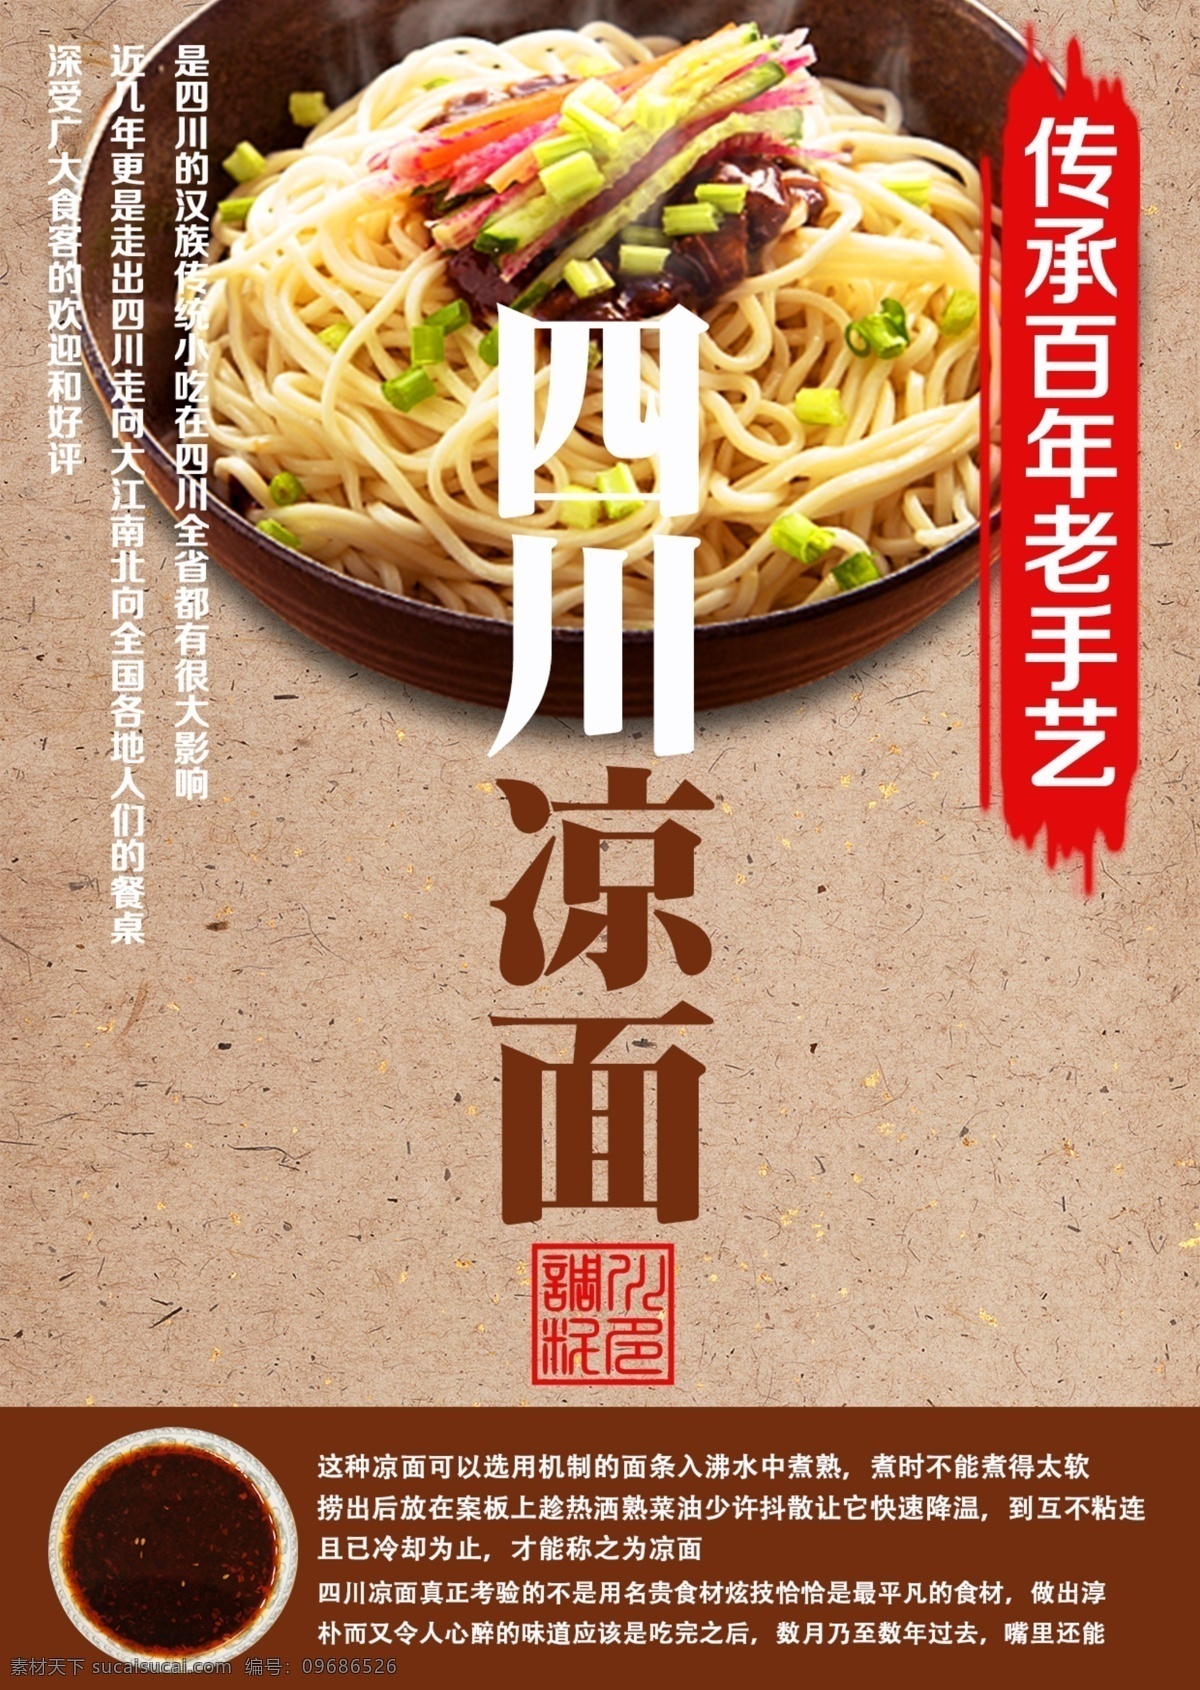 黄色 中国 风 夏季 推荐 四川 凉面 菜谱 传统 中国风 美食 老手艺 美味